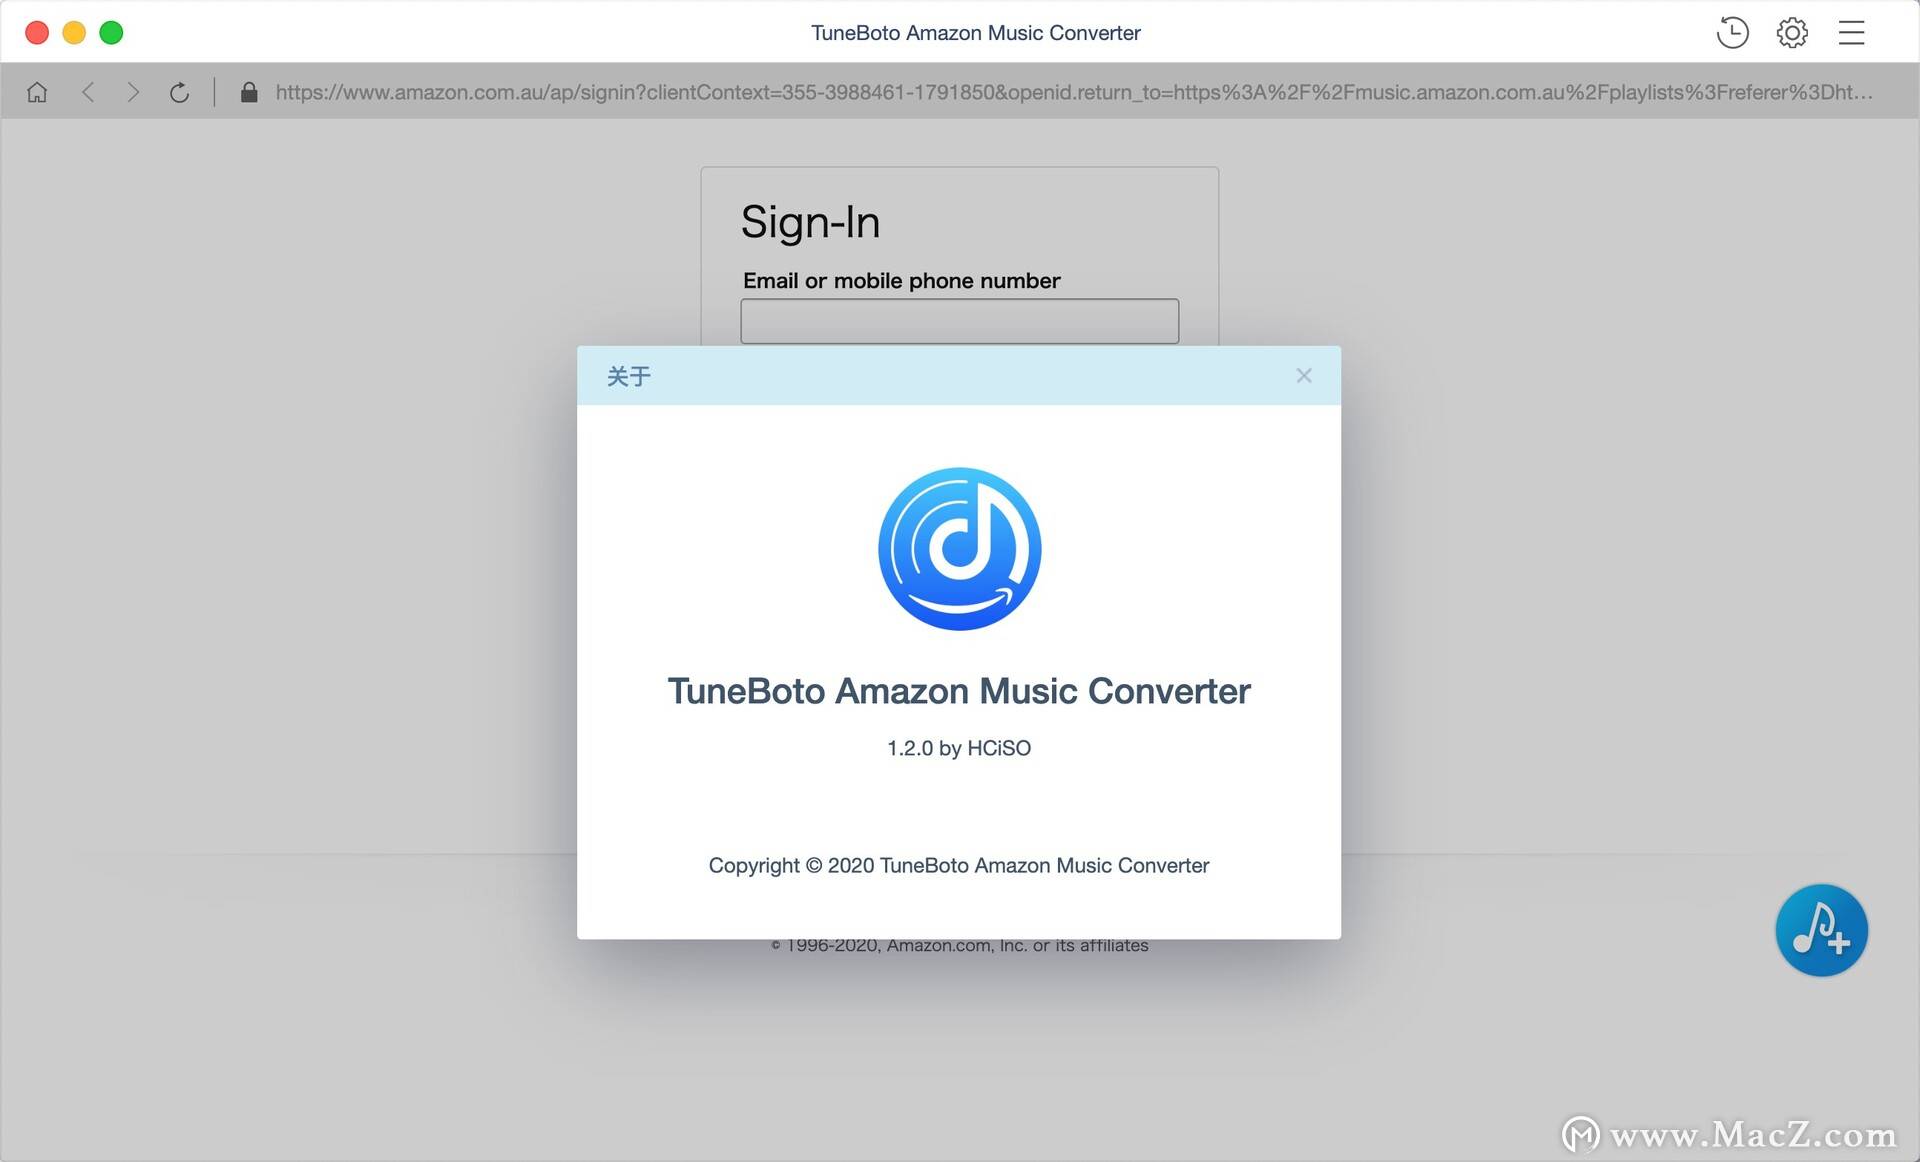 TuneBoto Amazon Music Converter 1.2.0